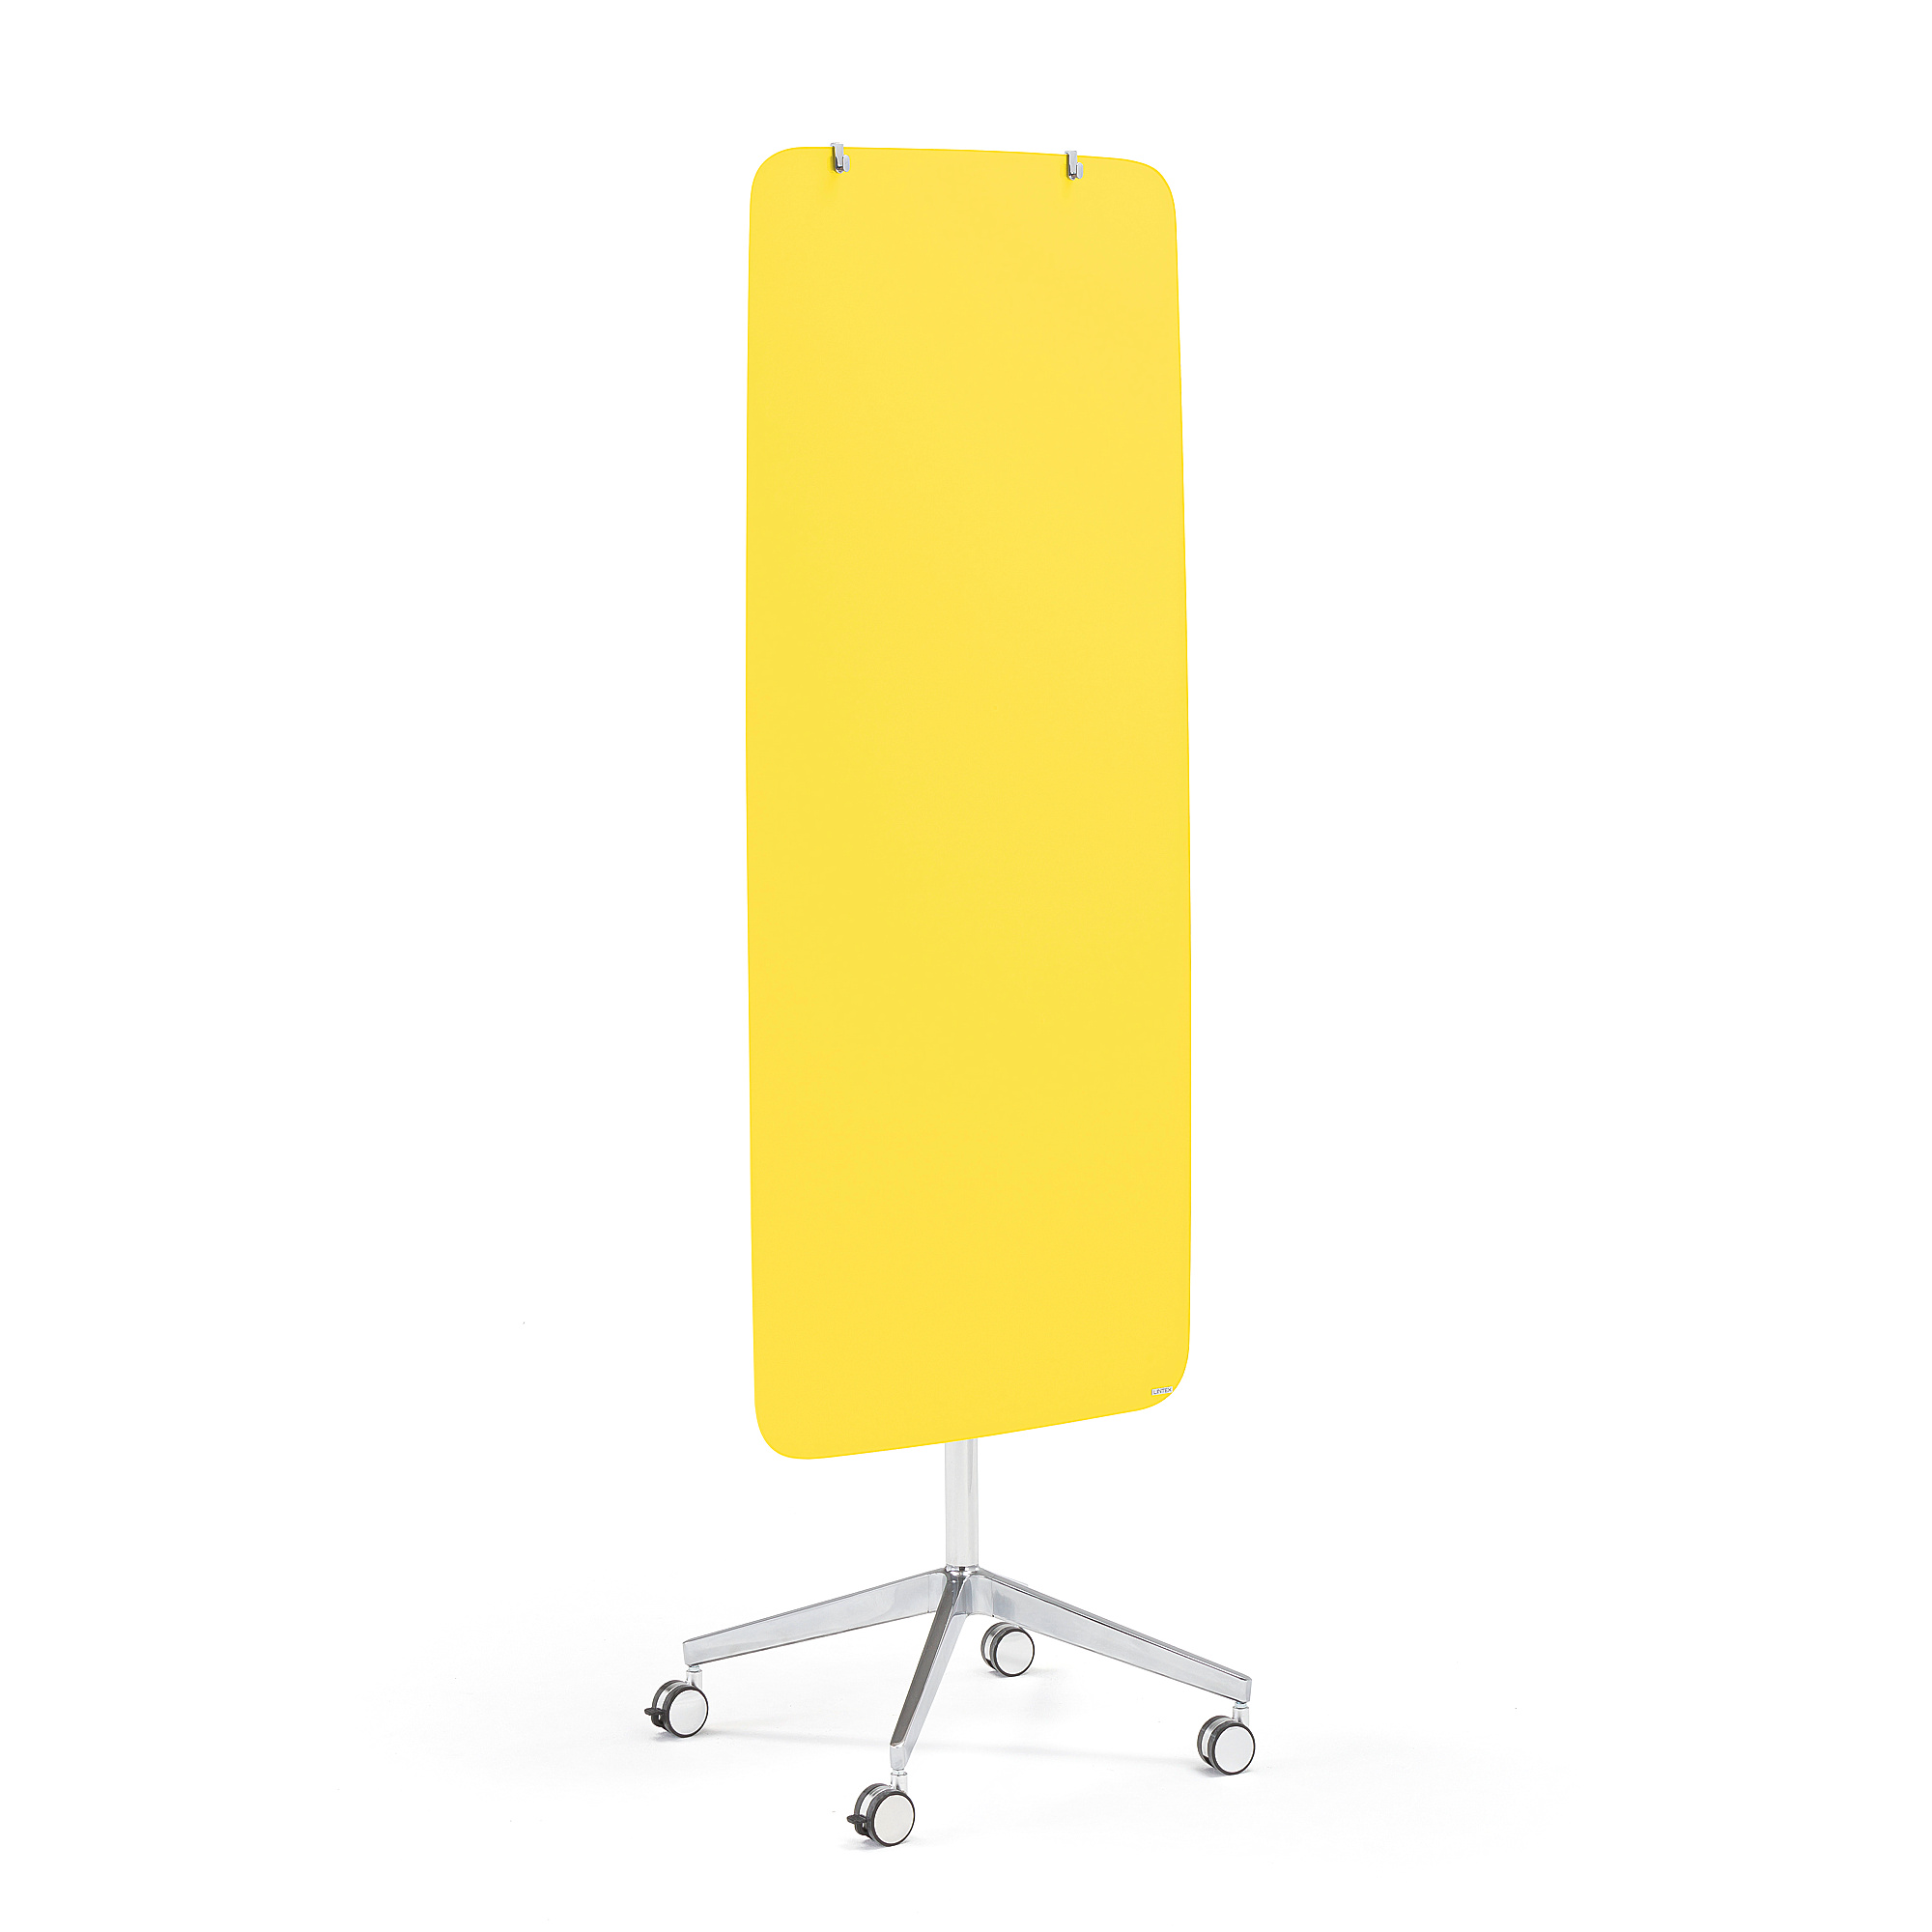 Mobilní skleněná tabule STELLA, magnetická, kulaté rohy, žlutá